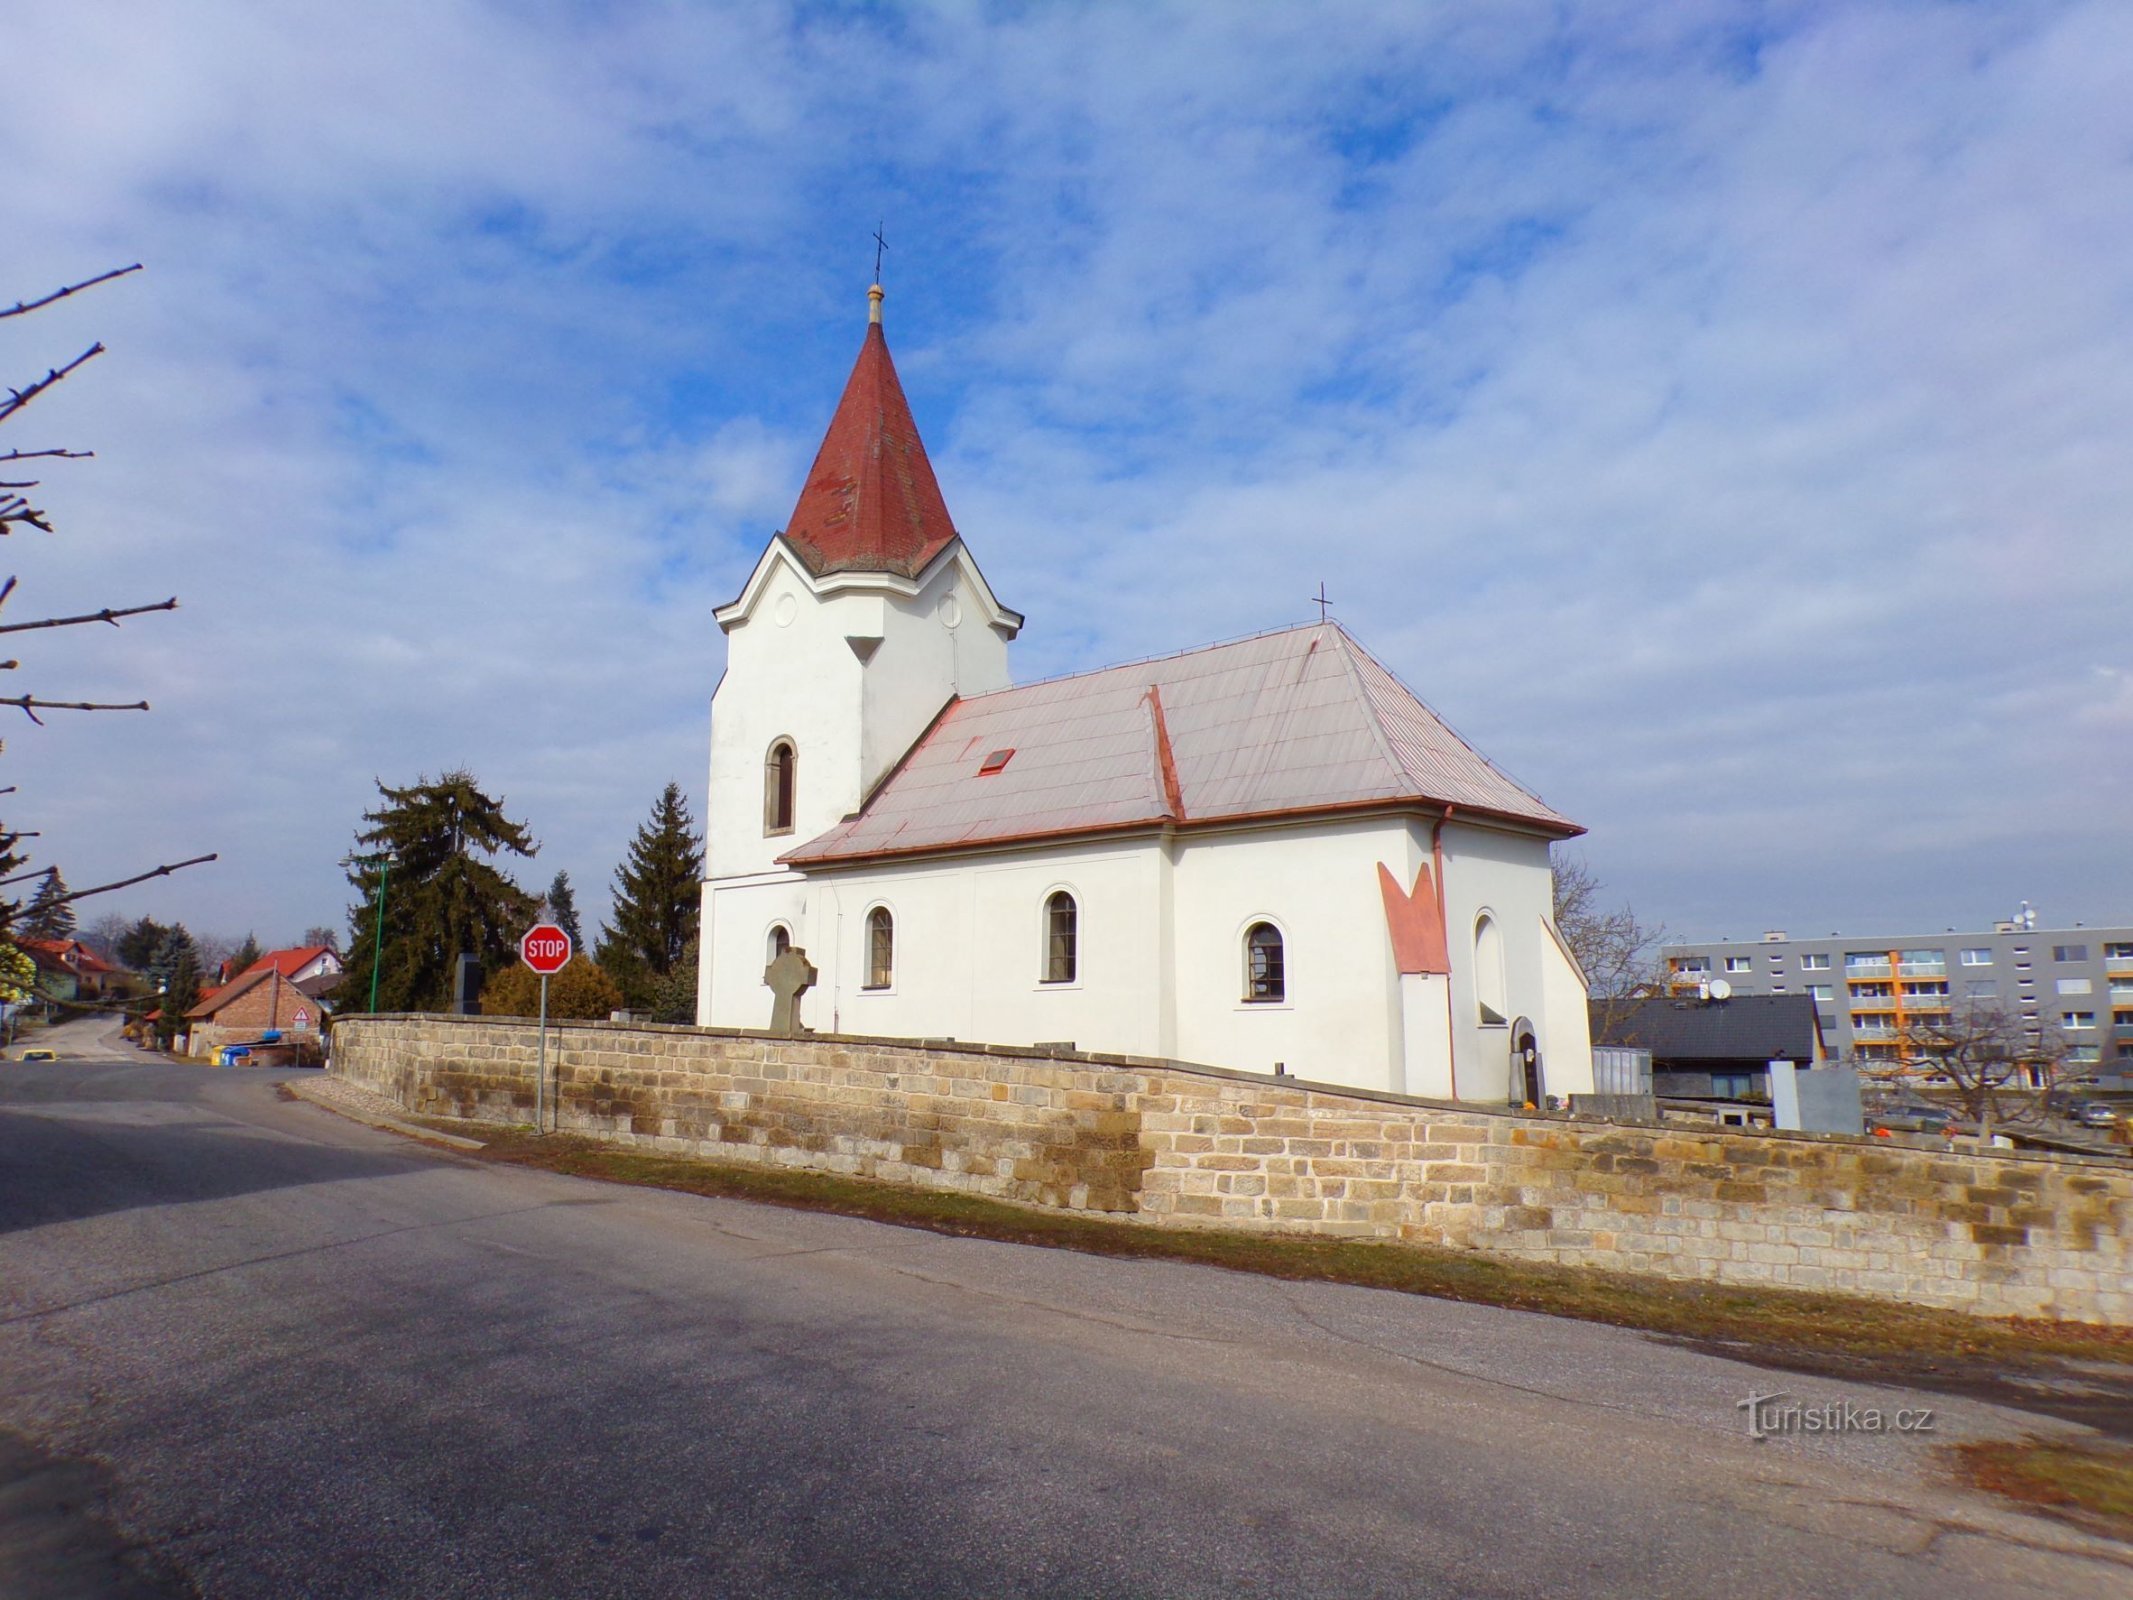 Cerkev sv. František Serafinský (Stari kraj, 3.3.2022. XNUMX. XNUMX)